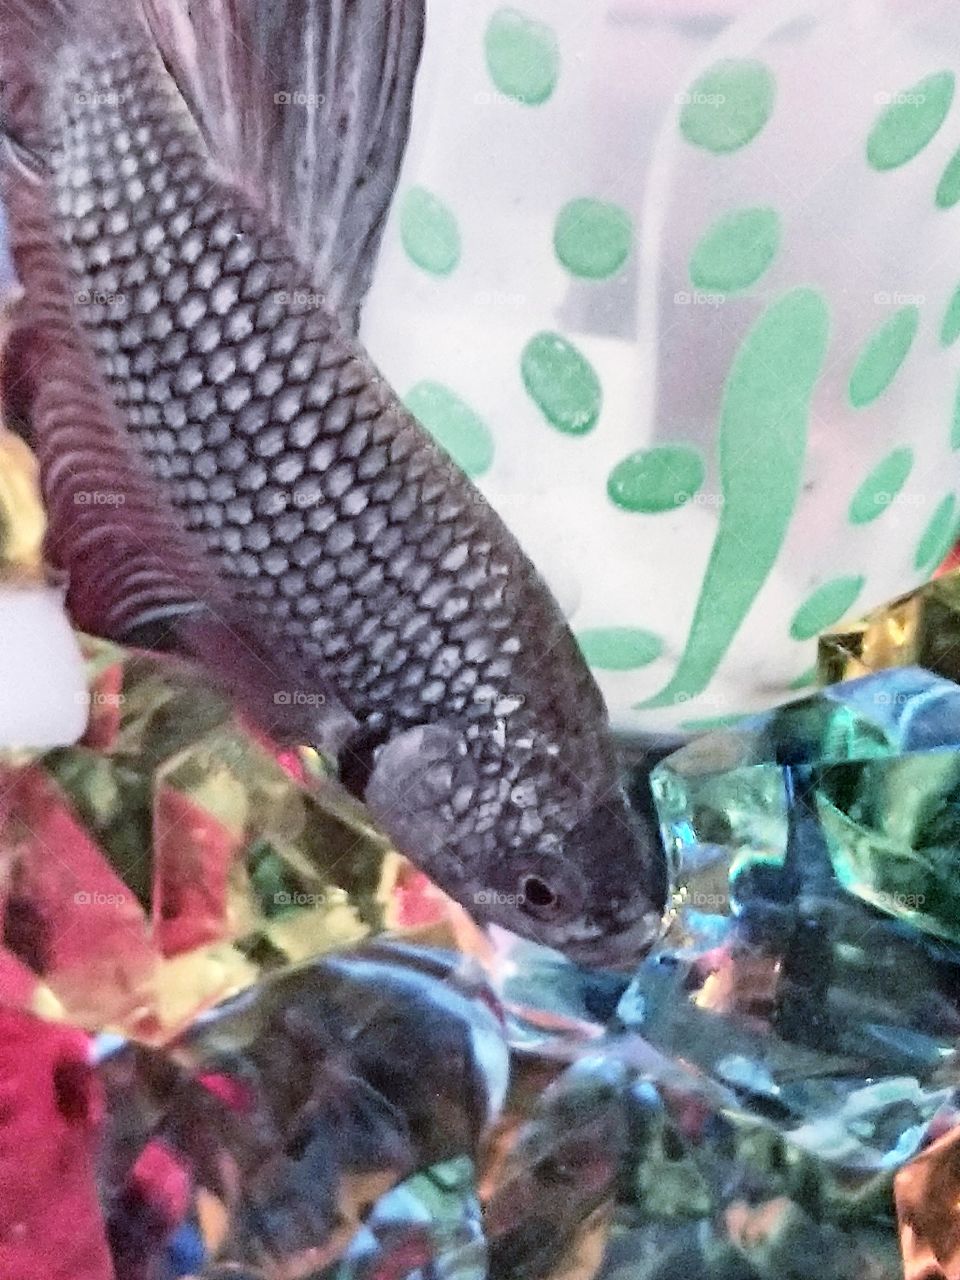 Beta / Betta fish in a tank with aquarium rocks